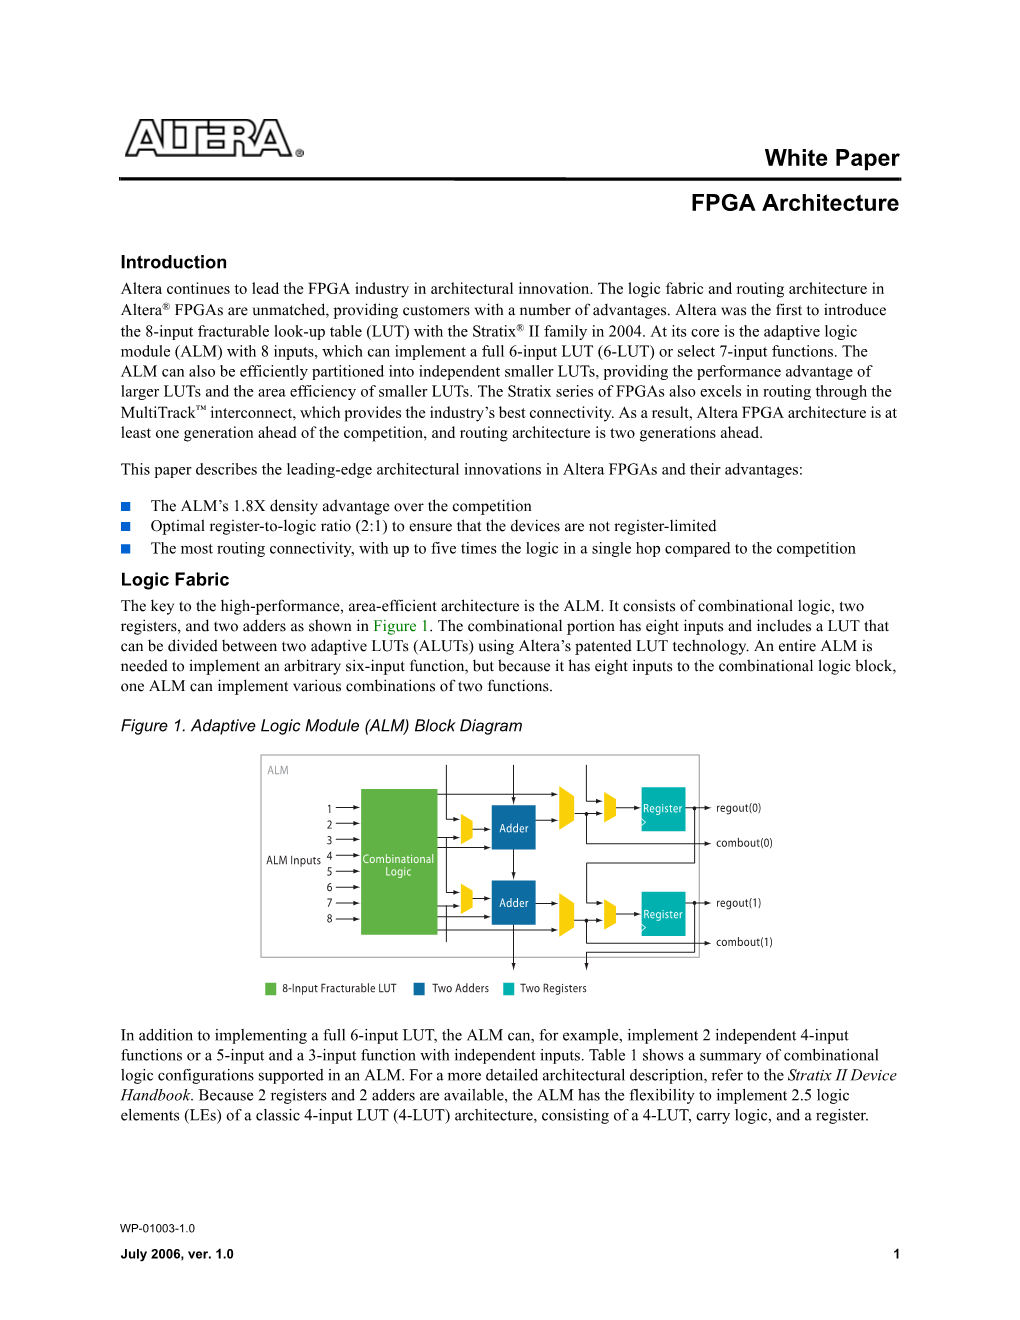 FPGA Architecture White Paper